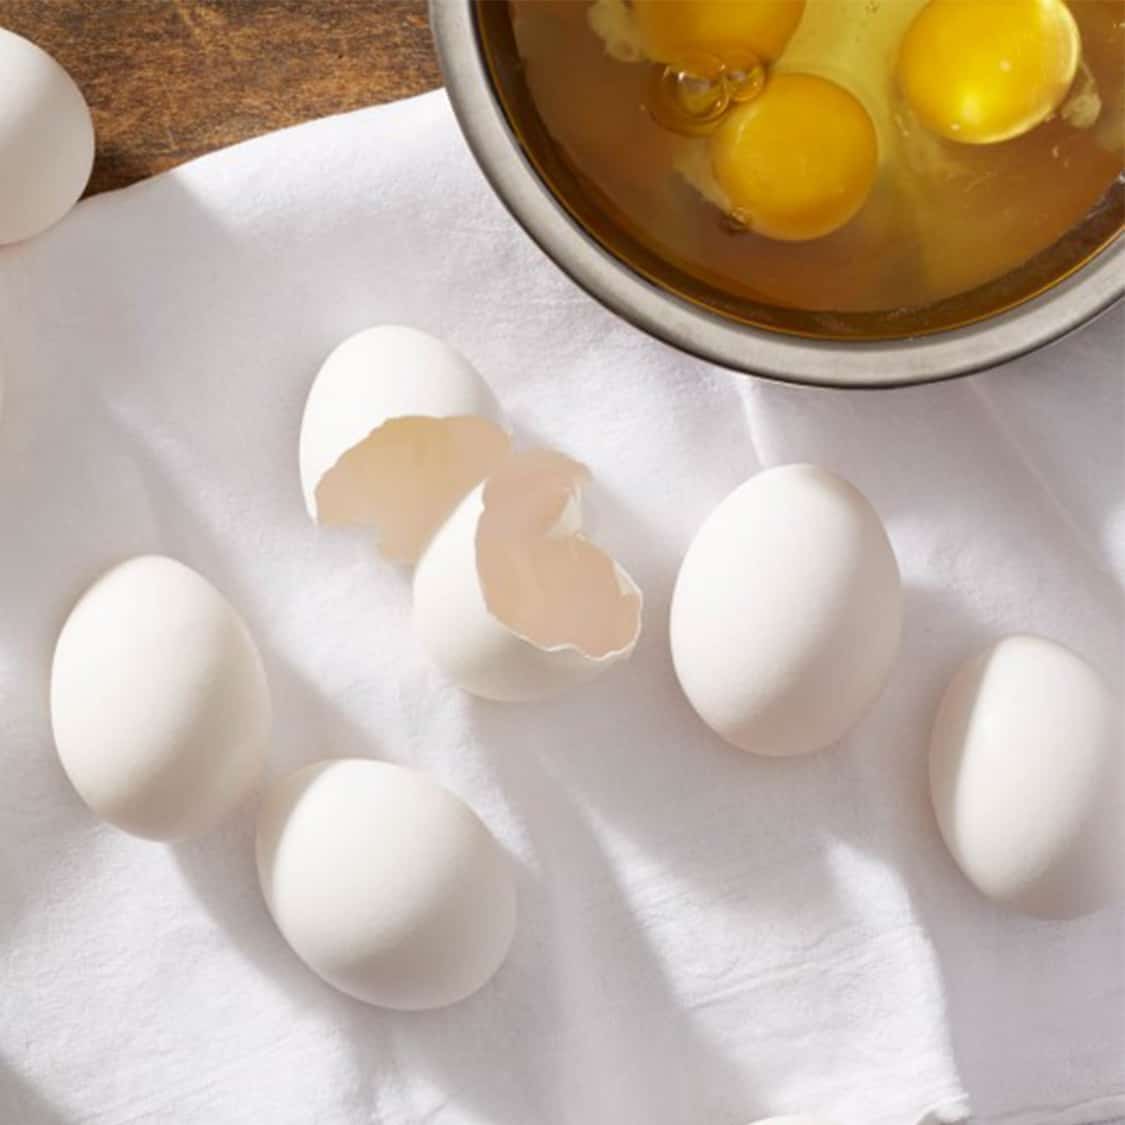 room temperature eggs